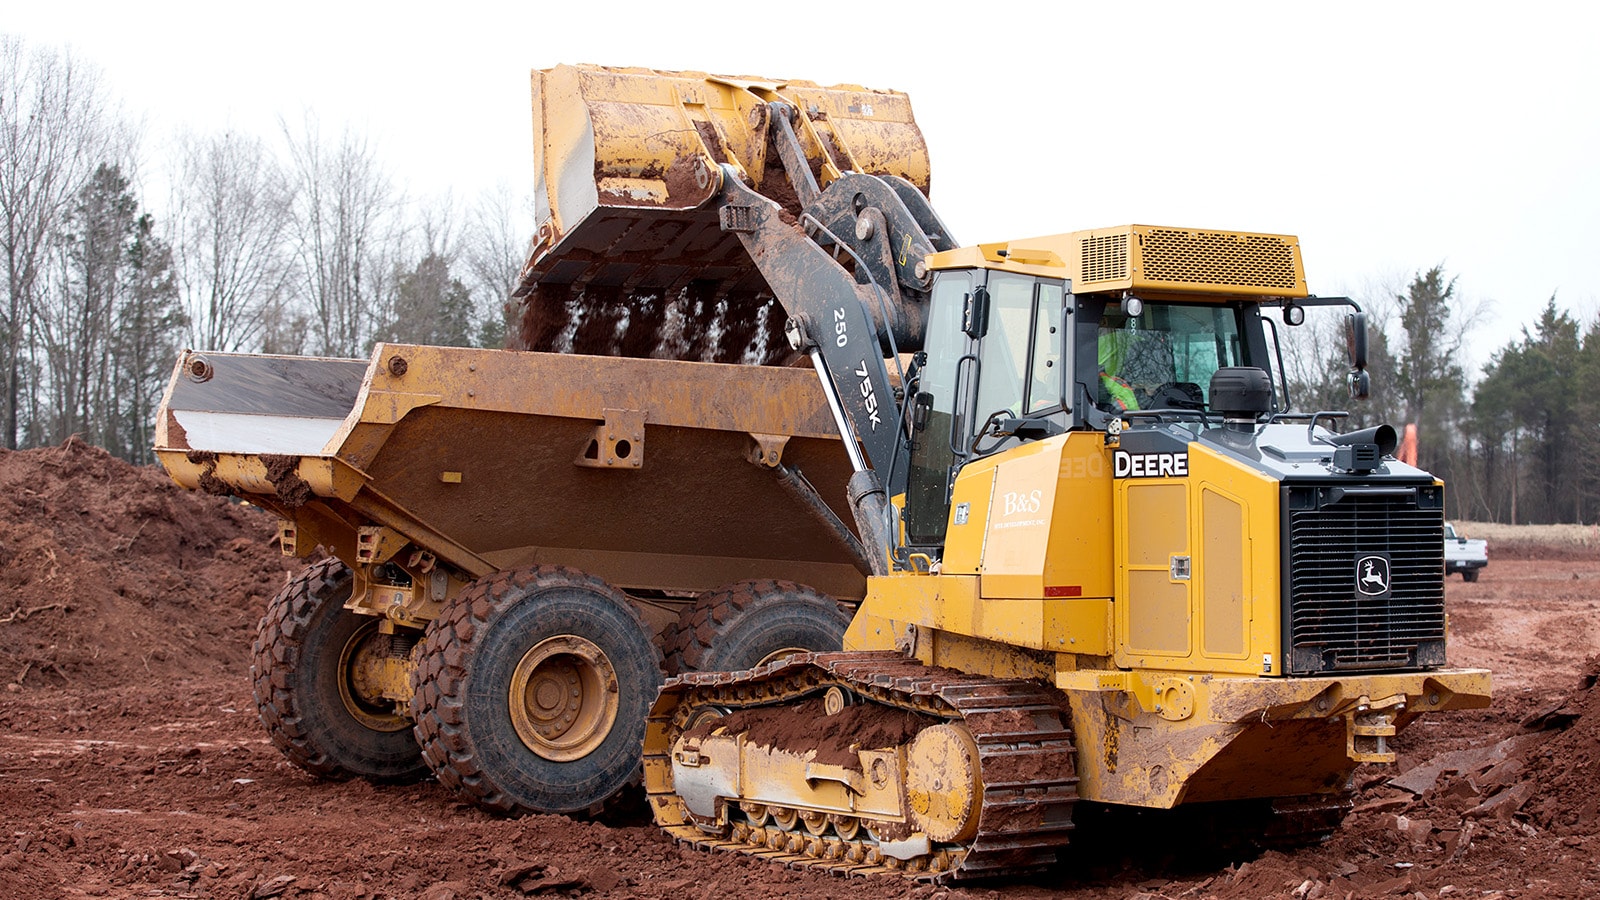 755K Crawler Loader loads a dump truck with dirt